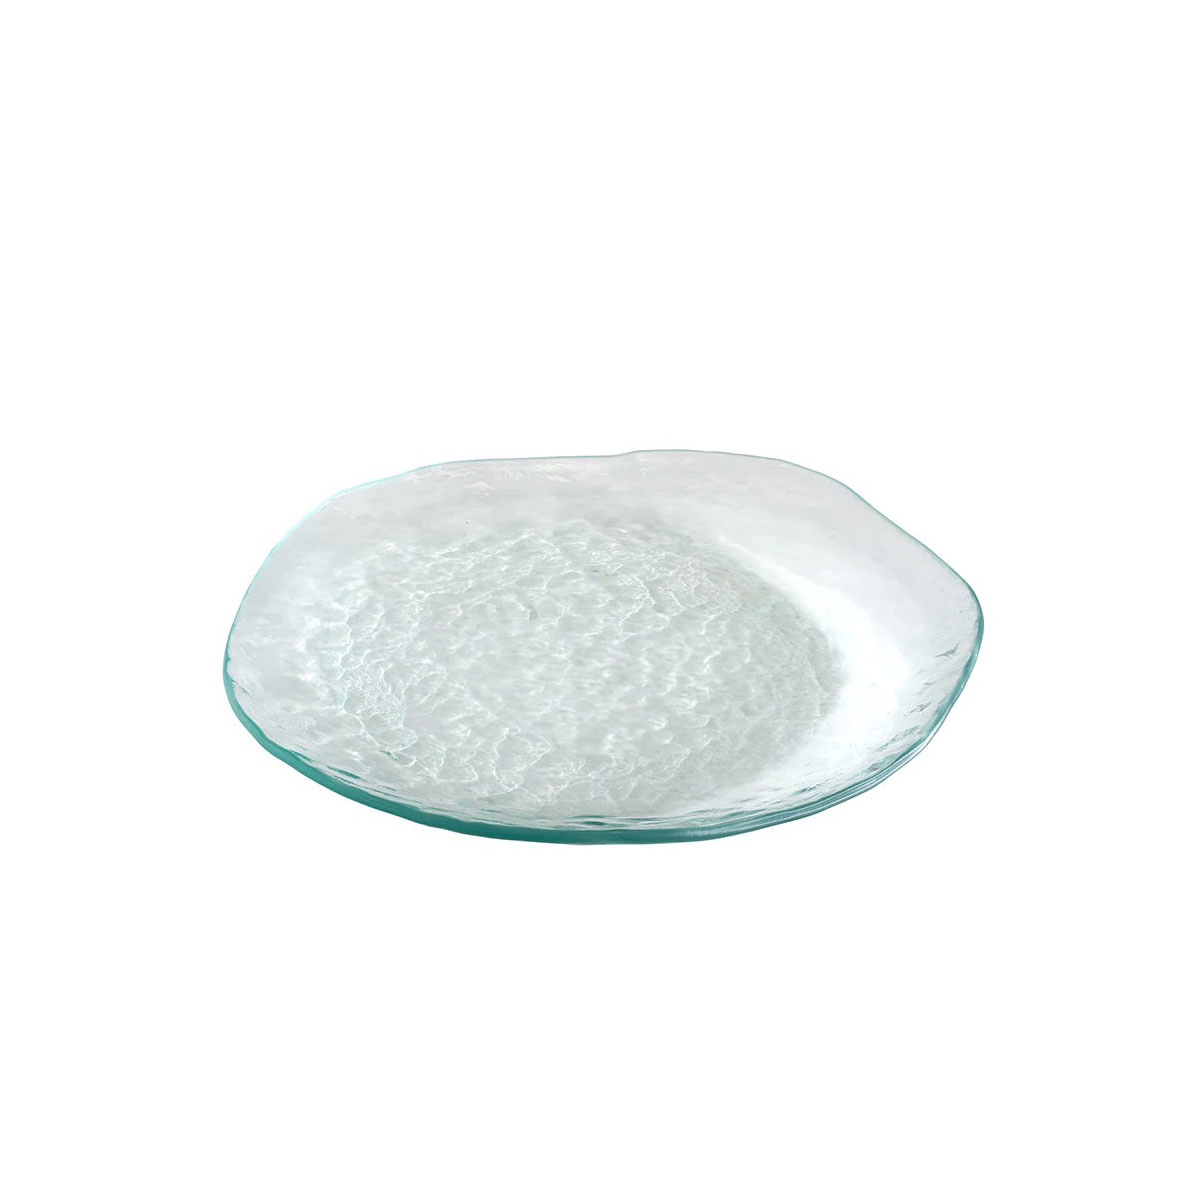 Annieglass Salt 13.75" Plate, Single